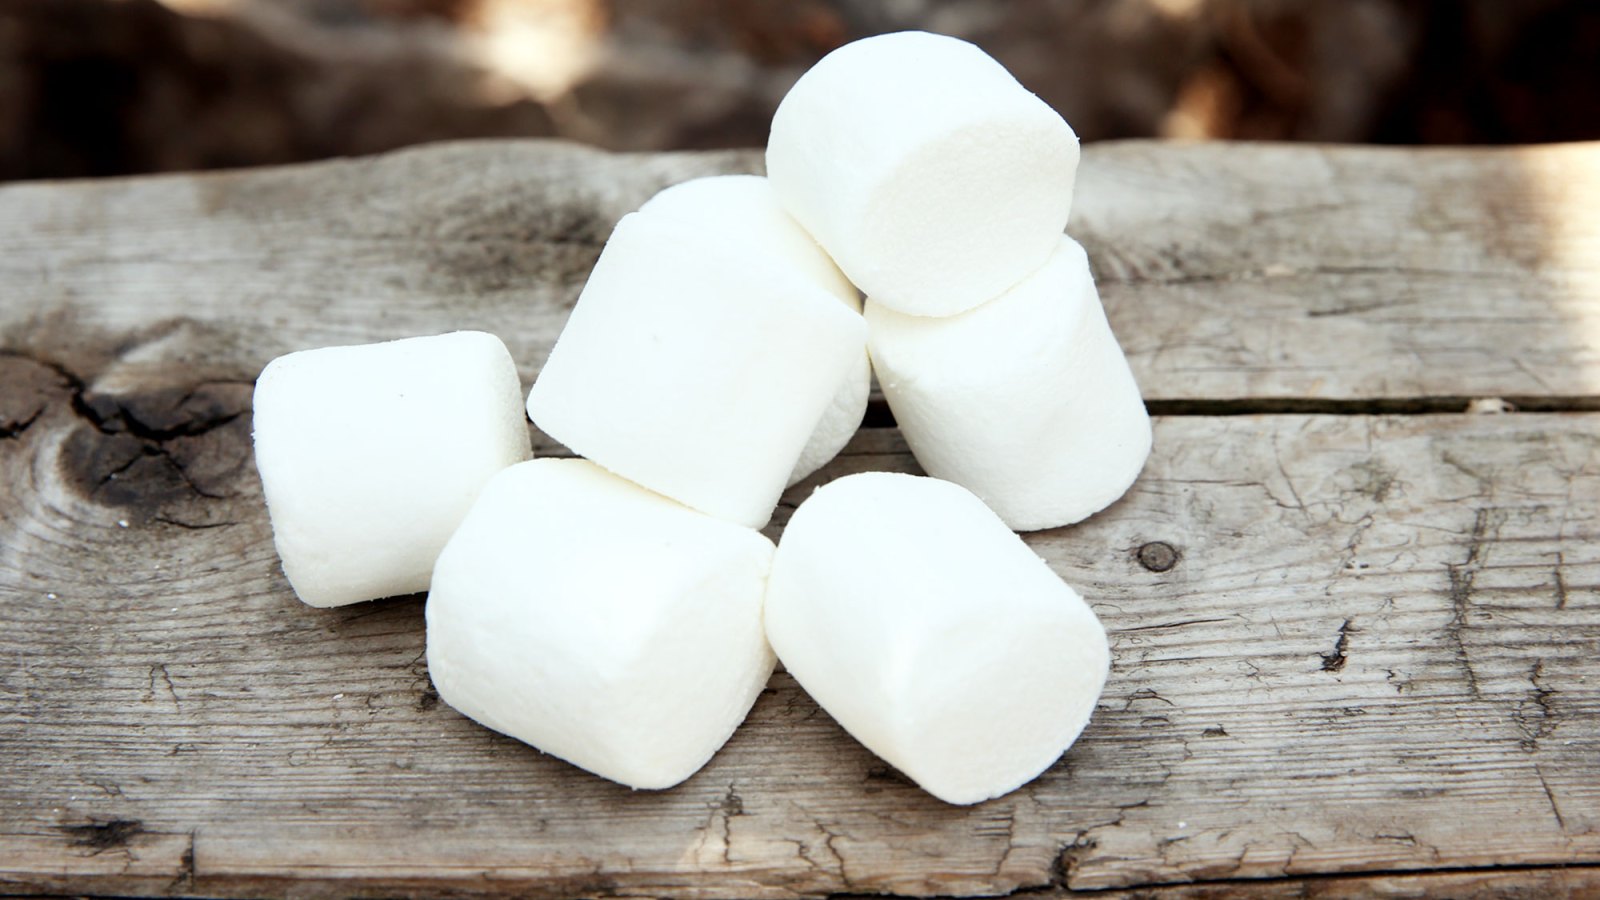 Chocolate-Stuffed Marshmallows